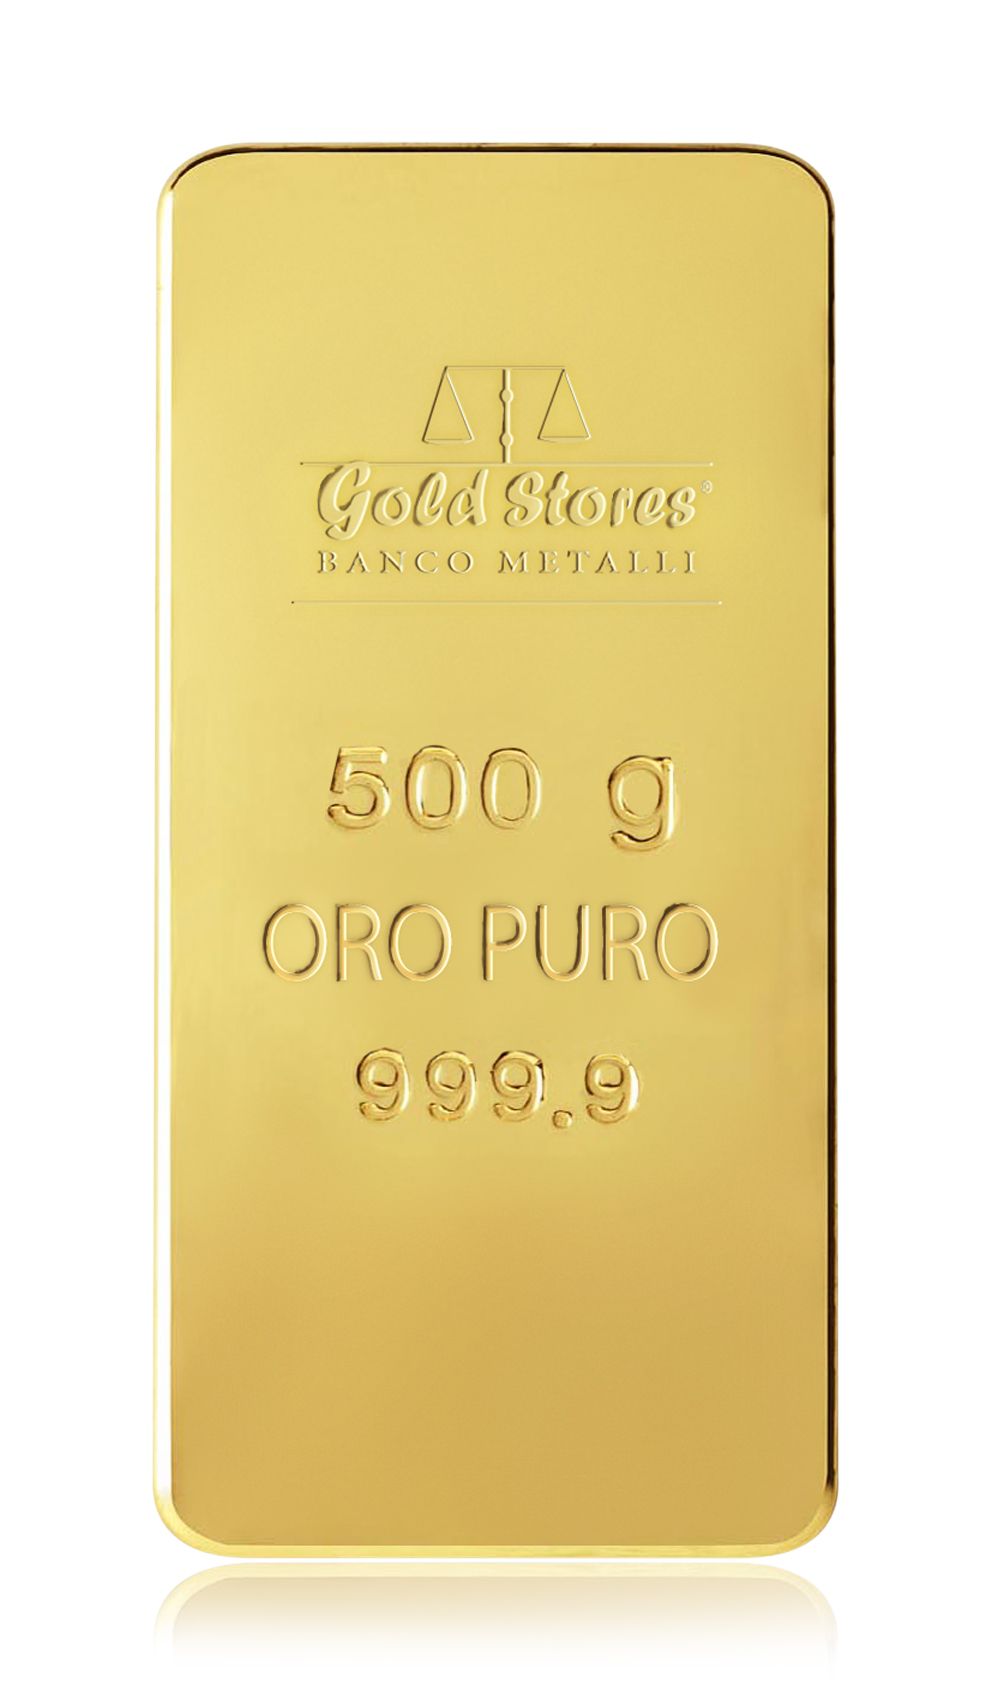 500 GRAMMI ORO PURO GoldStores